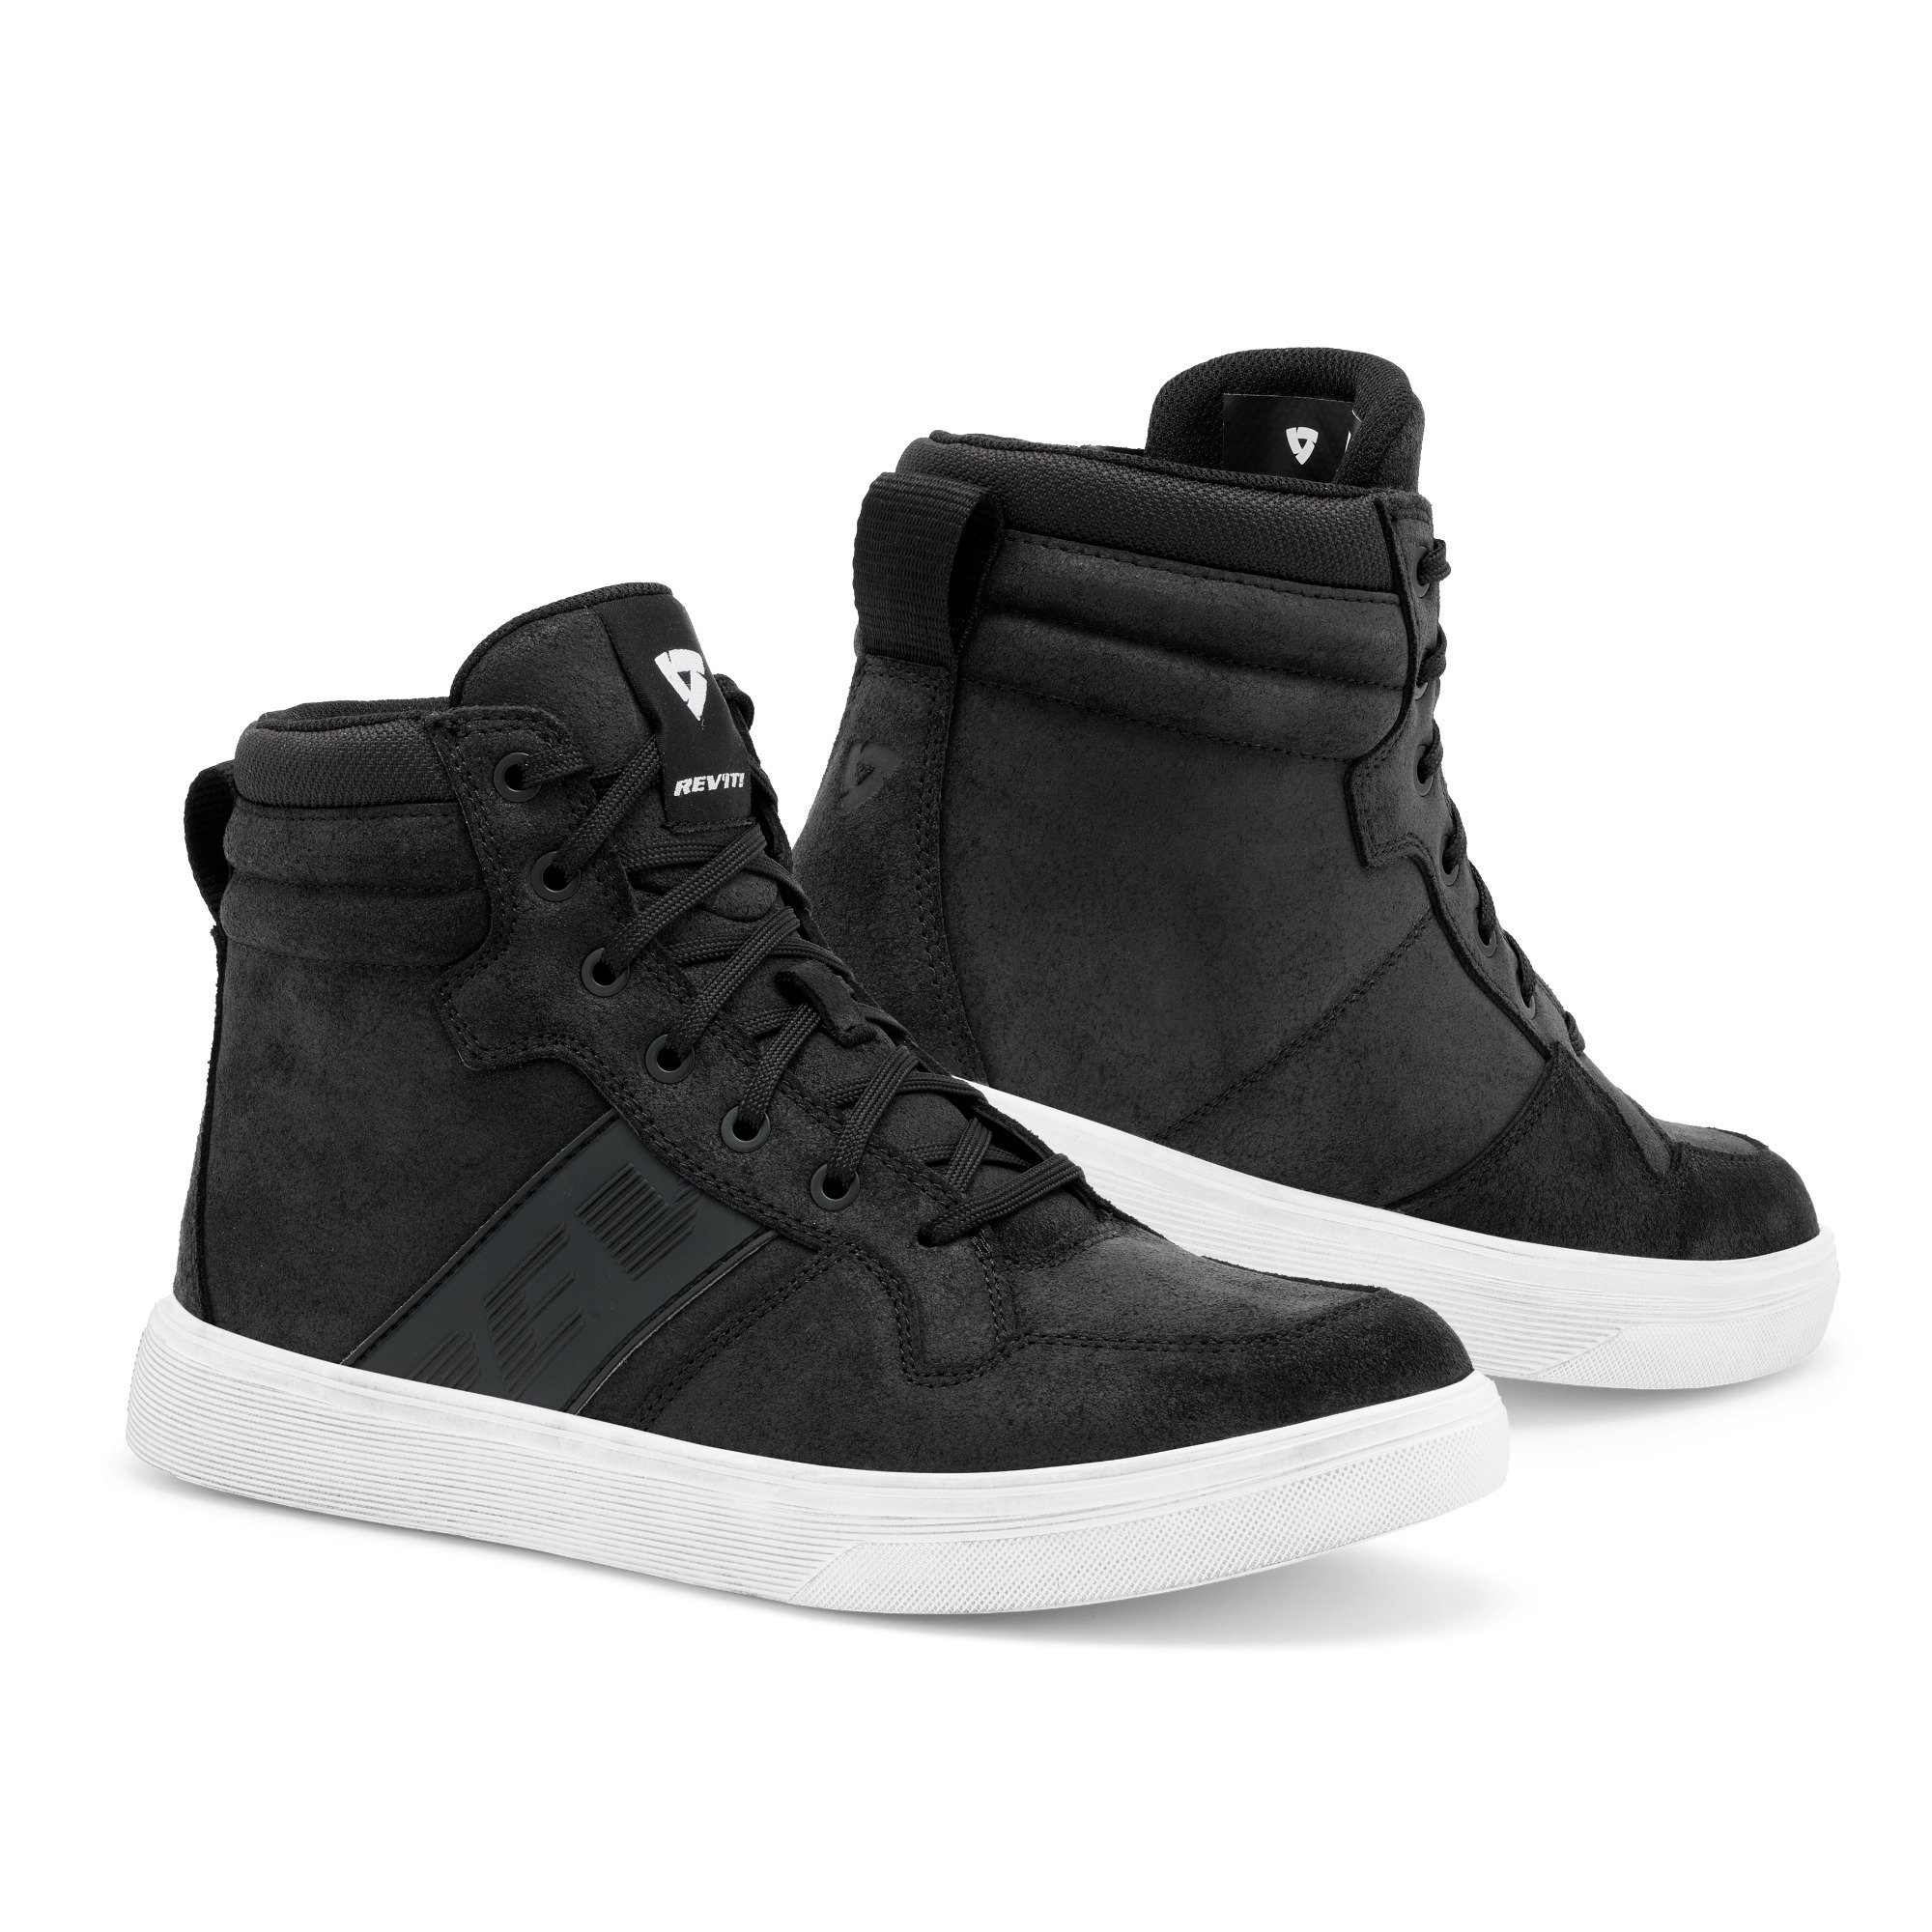 Image of REV'IT! Kick Shoes Black White Size 47 ID 8700001357555